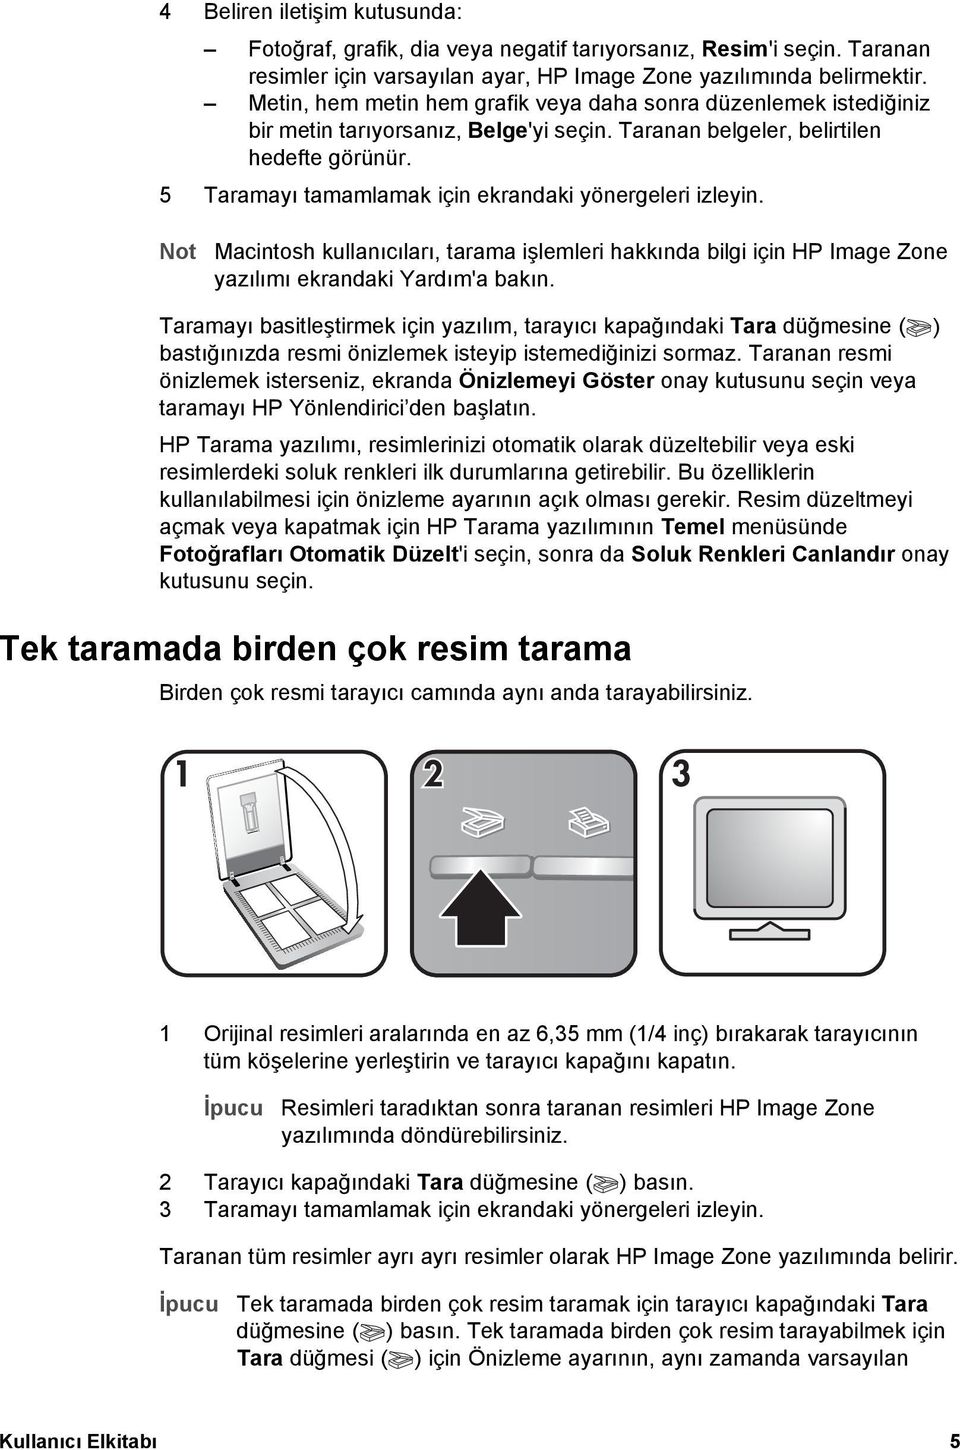 5 Taramayı tamamlamak için ekrandaki yönergeleri izleyin. Not Macintosh kullanıcıları, tarama işlemleri hakkında bilgi için HP Image Zone yazılımı ekrandaki Yardım'a bakın.